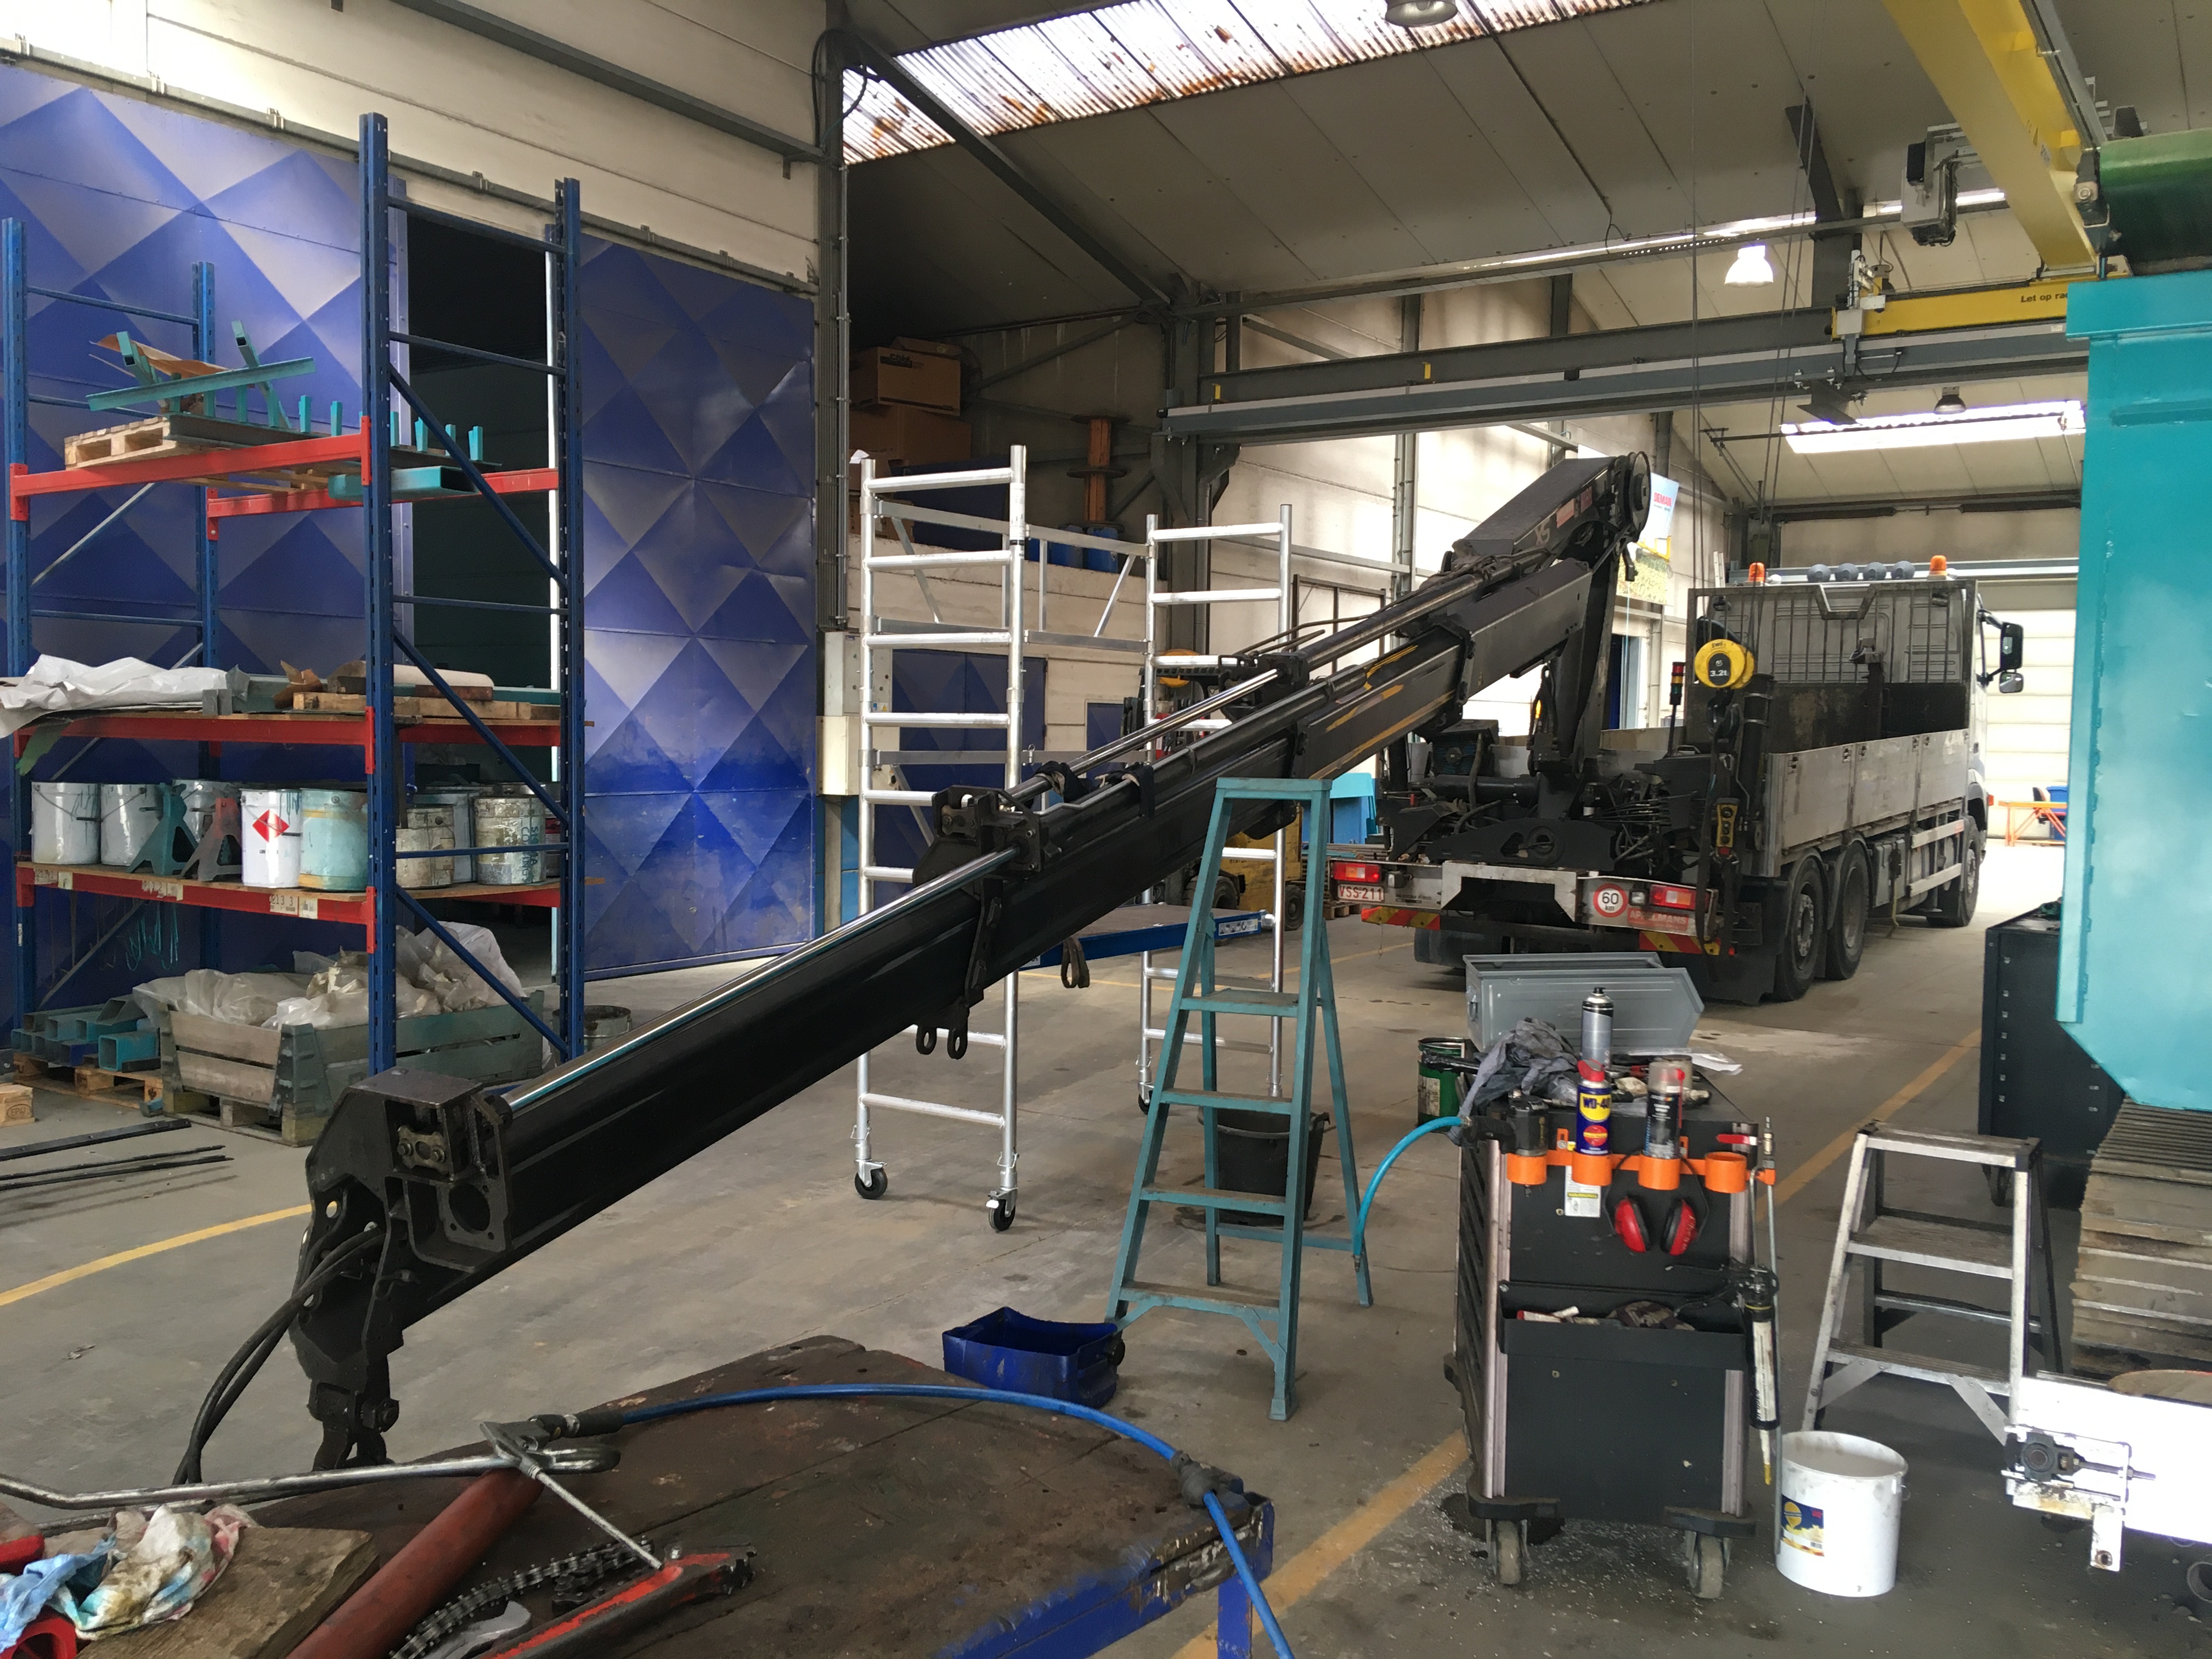 trailer crane under maintenance in workshop